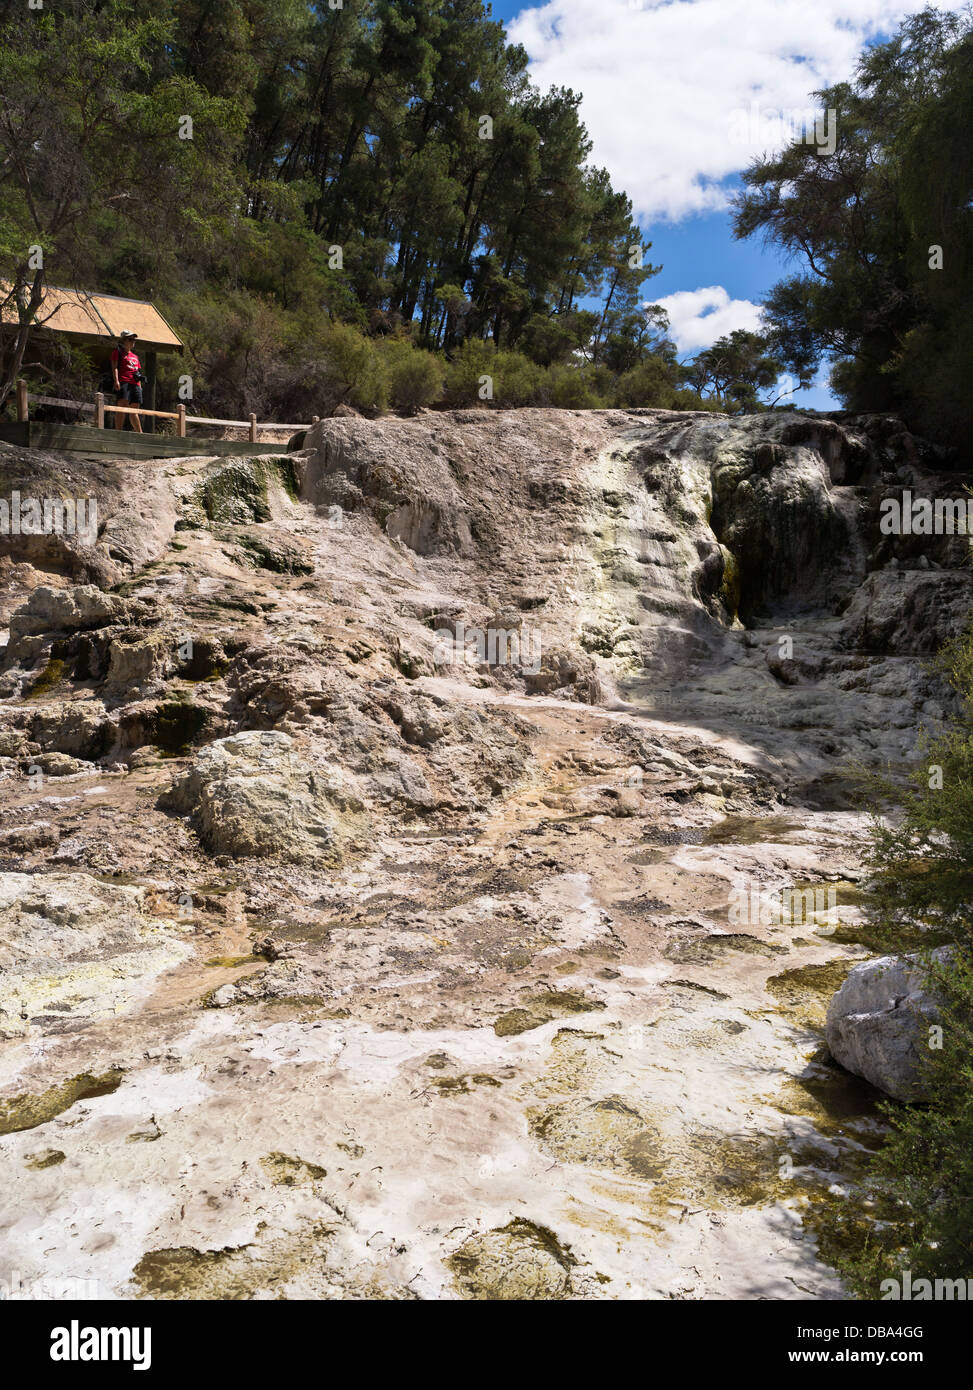 dh Wai O Tapu Thermal Wonderland WAIOTAPU NOUVELLE-ZÉLANDE femme visite touristique Bridal Veil Falls volcan chute d'eau lave coulant rock Banque D'Images